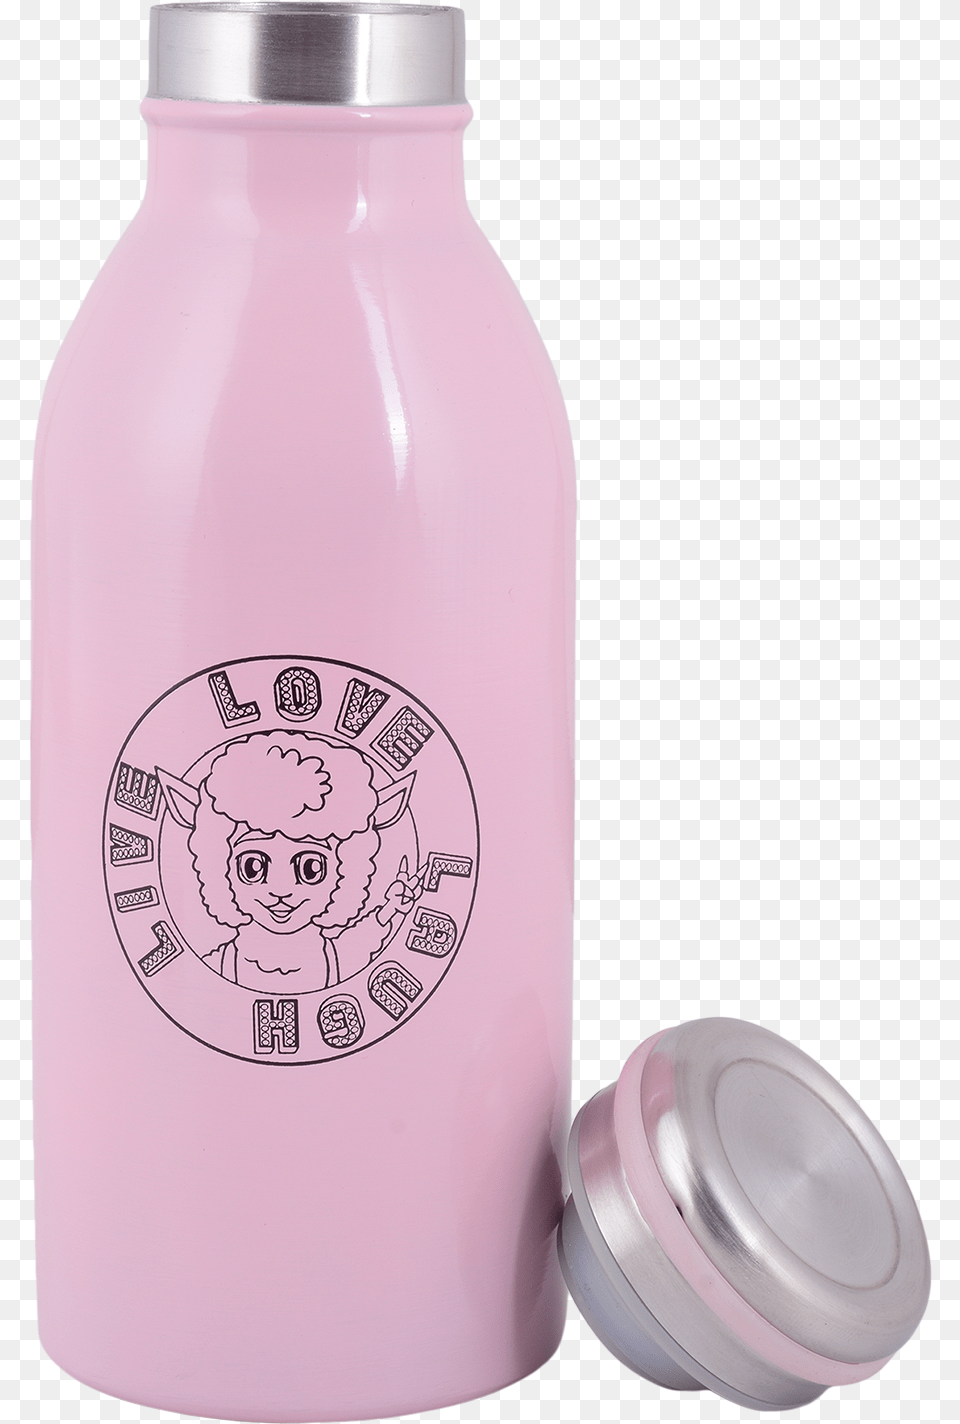 Live Love Laugh Bottle Water Bottle, Jar, Face, Head, Person Png Image